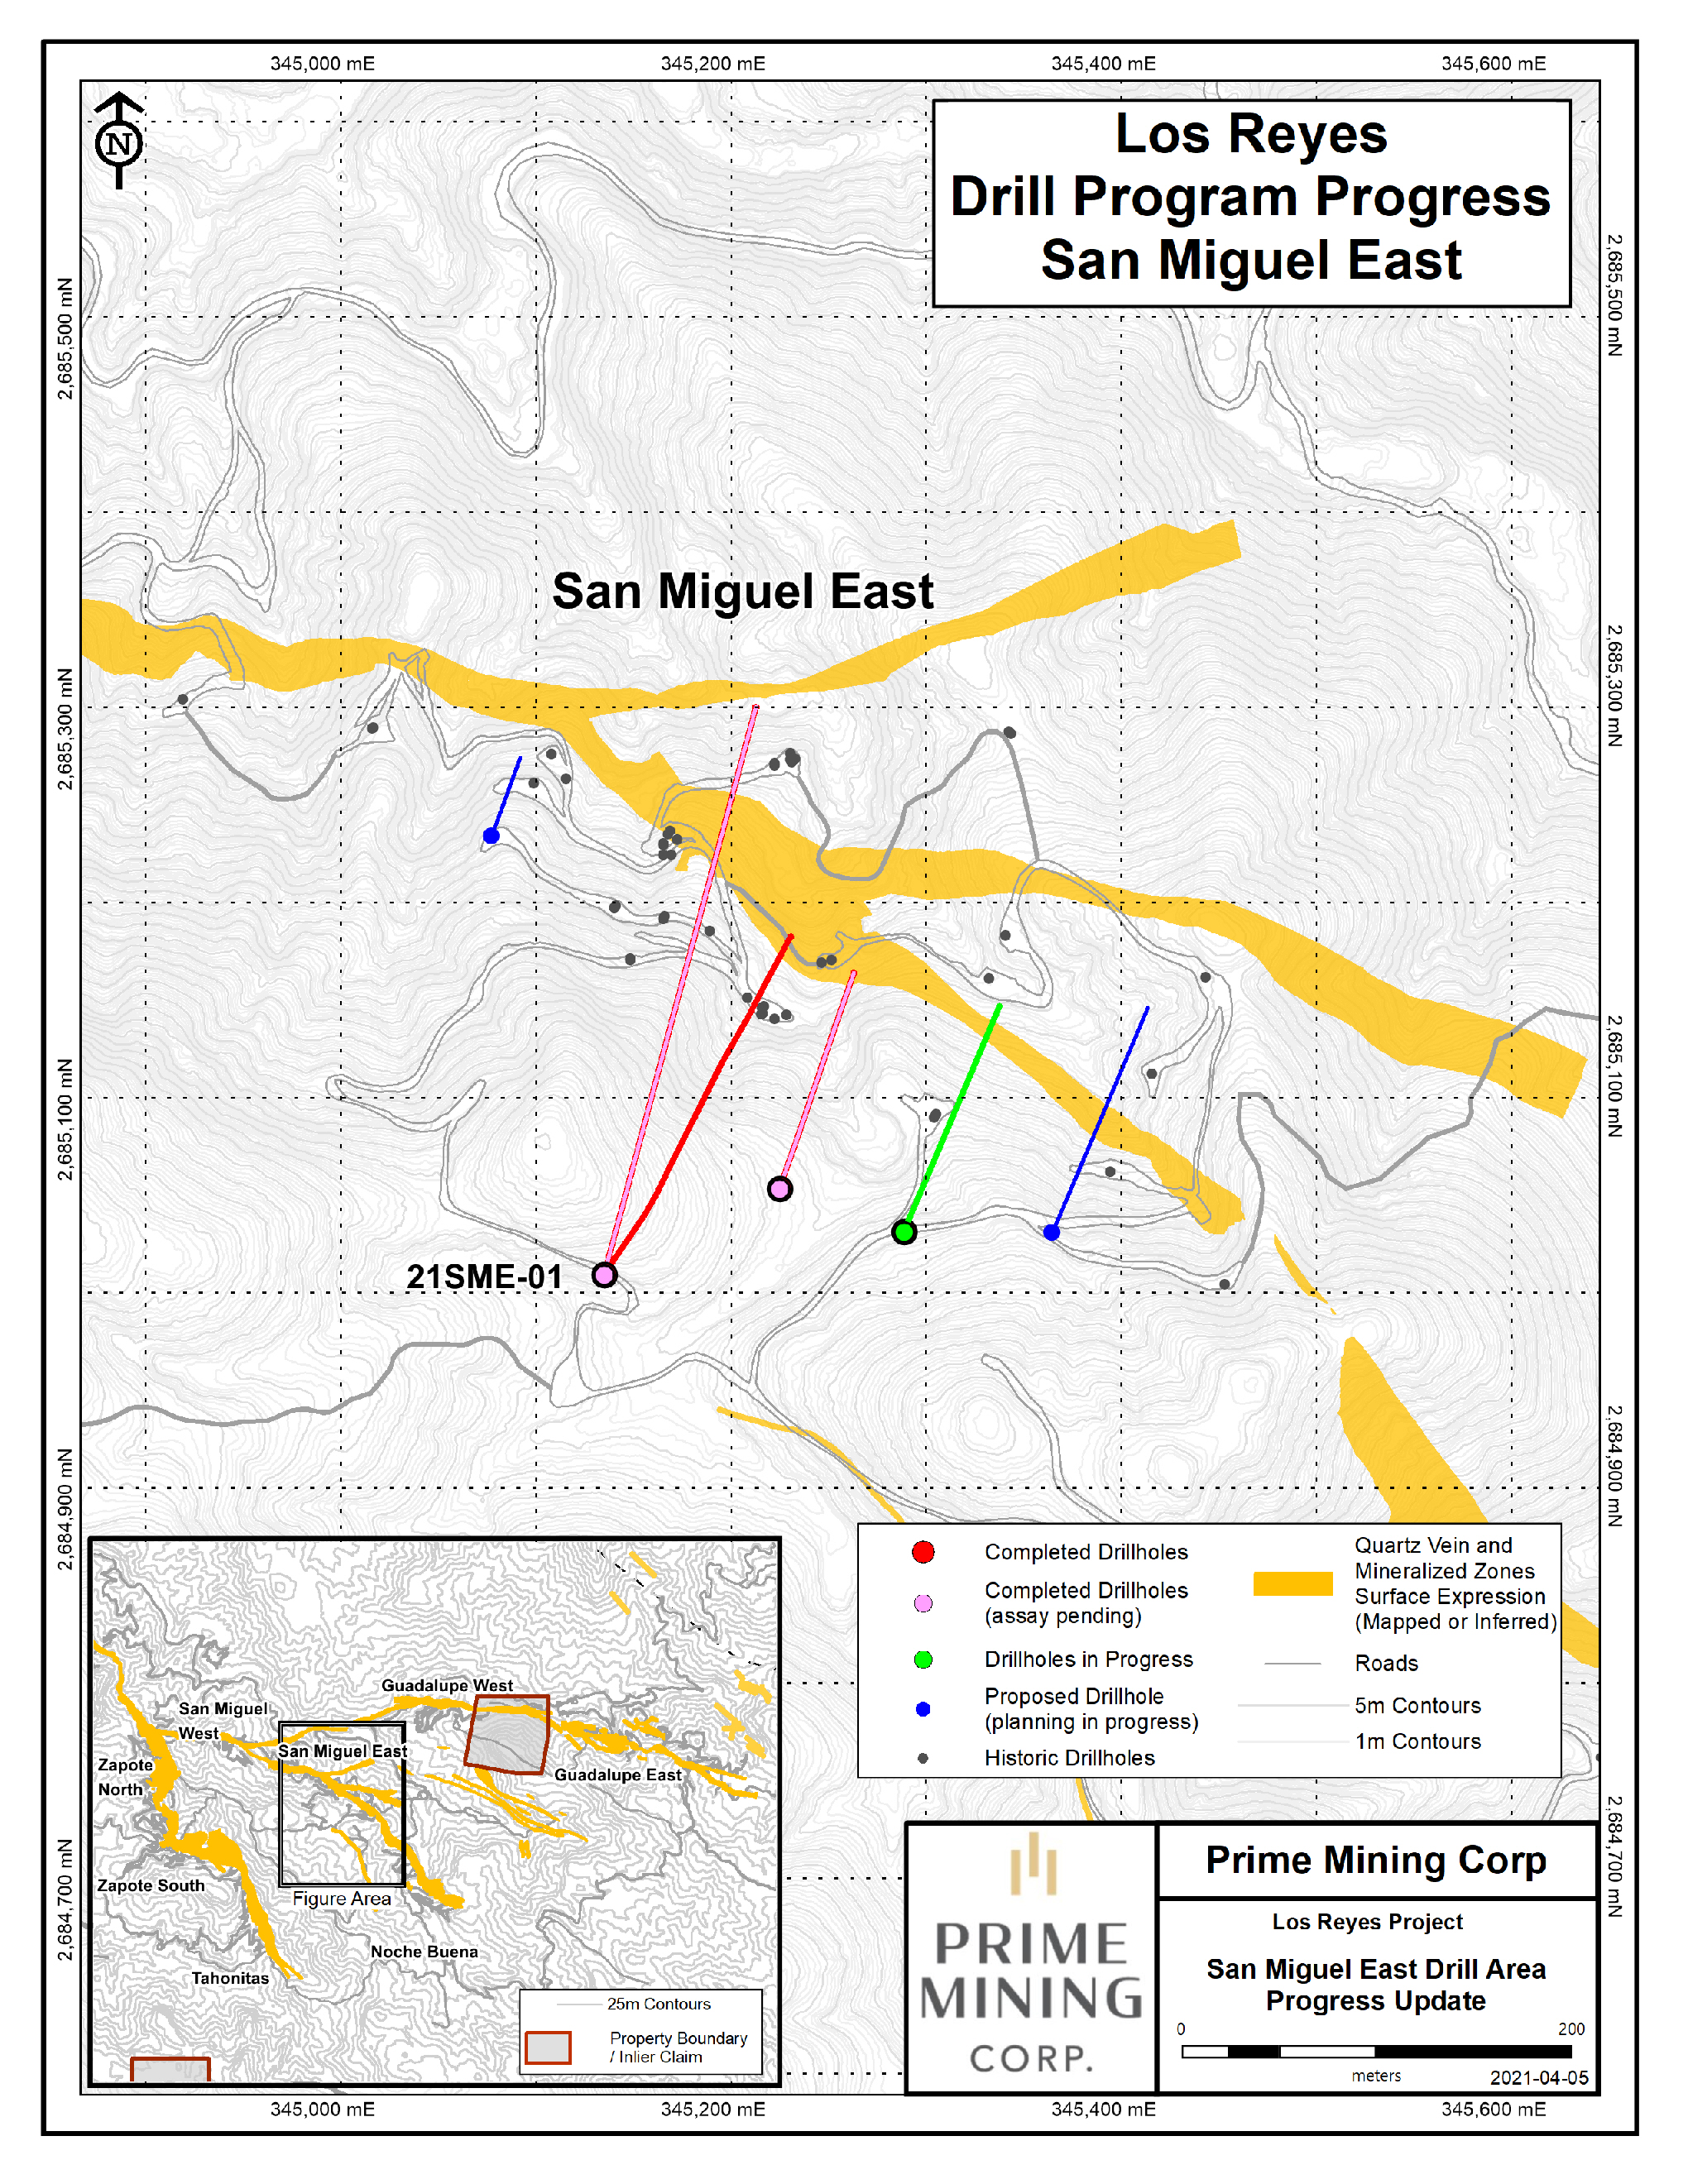 April 6, 2021 Fig. 4 San Miguel East Drill Progress